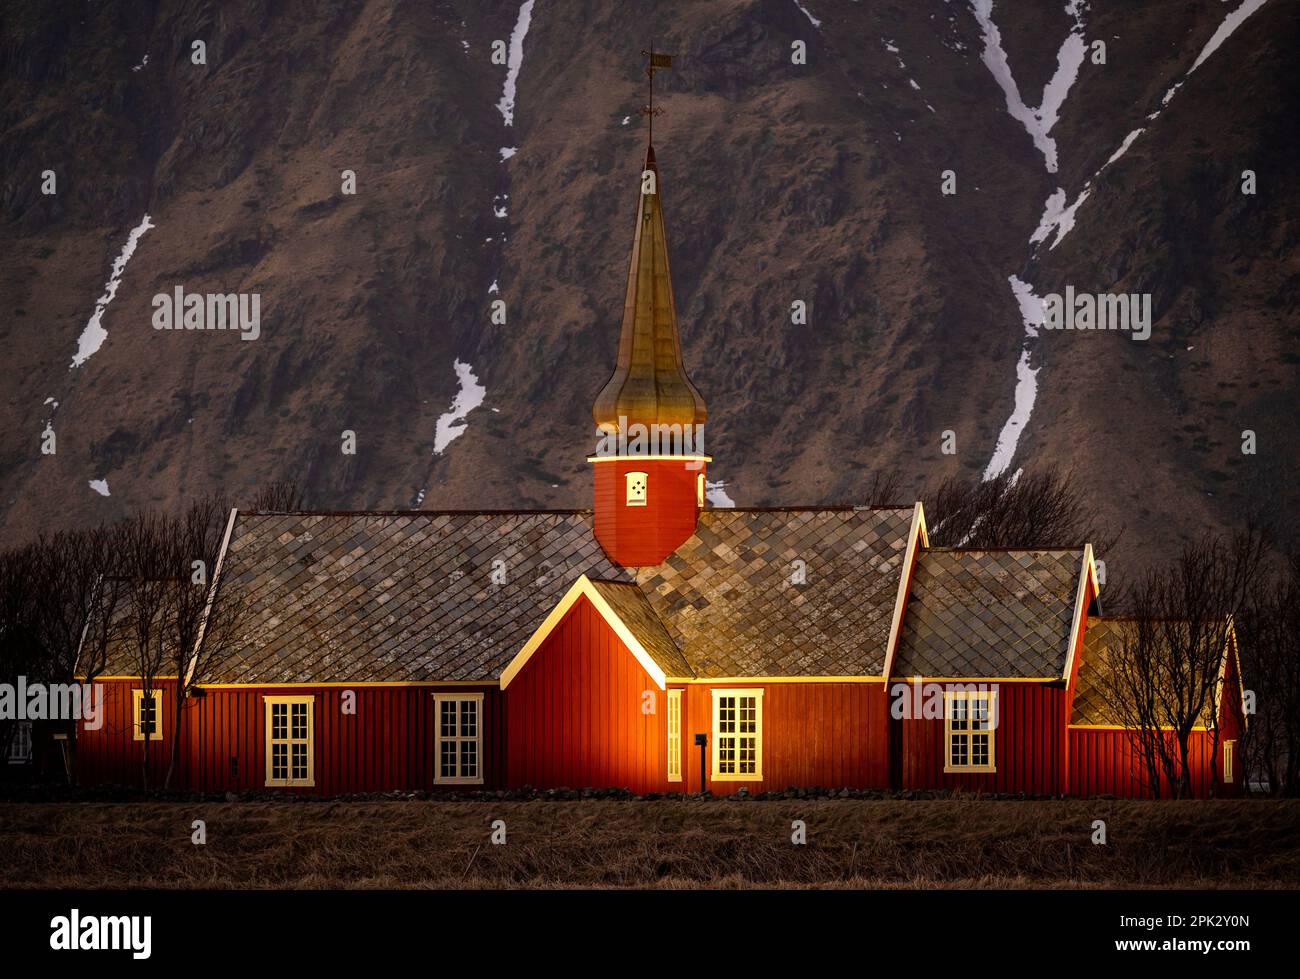 Église en bois de couleur rouge à partir de 1780 ans, illuminée le soir avec une haute montagne rocheuse avec de la neige. Église Flakstad, Lofoten, Norvège. Banque D'Images